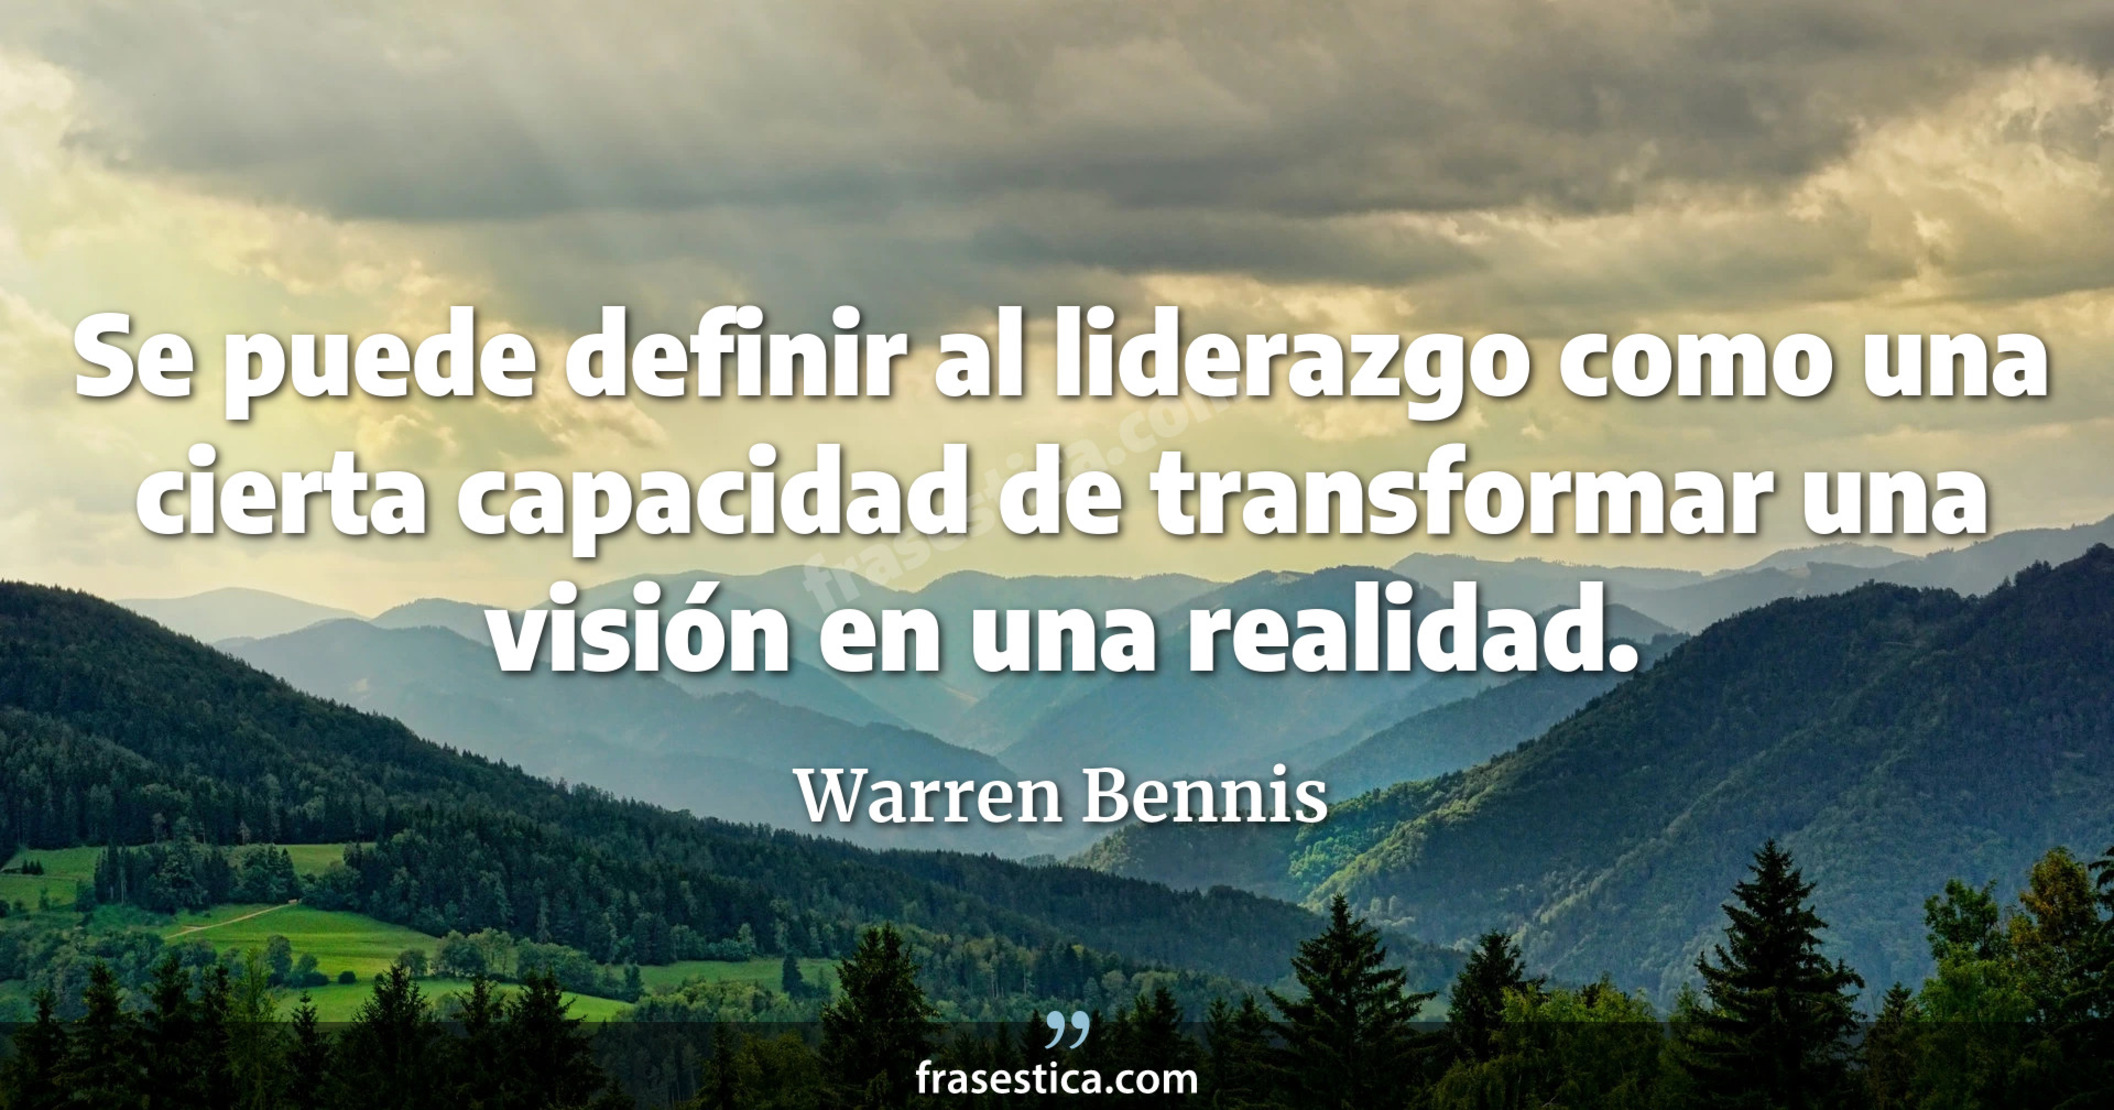 Se puede definir al liderazgo como una cierta capacidad de transformar una visión en una realidad. - Warren Bennis